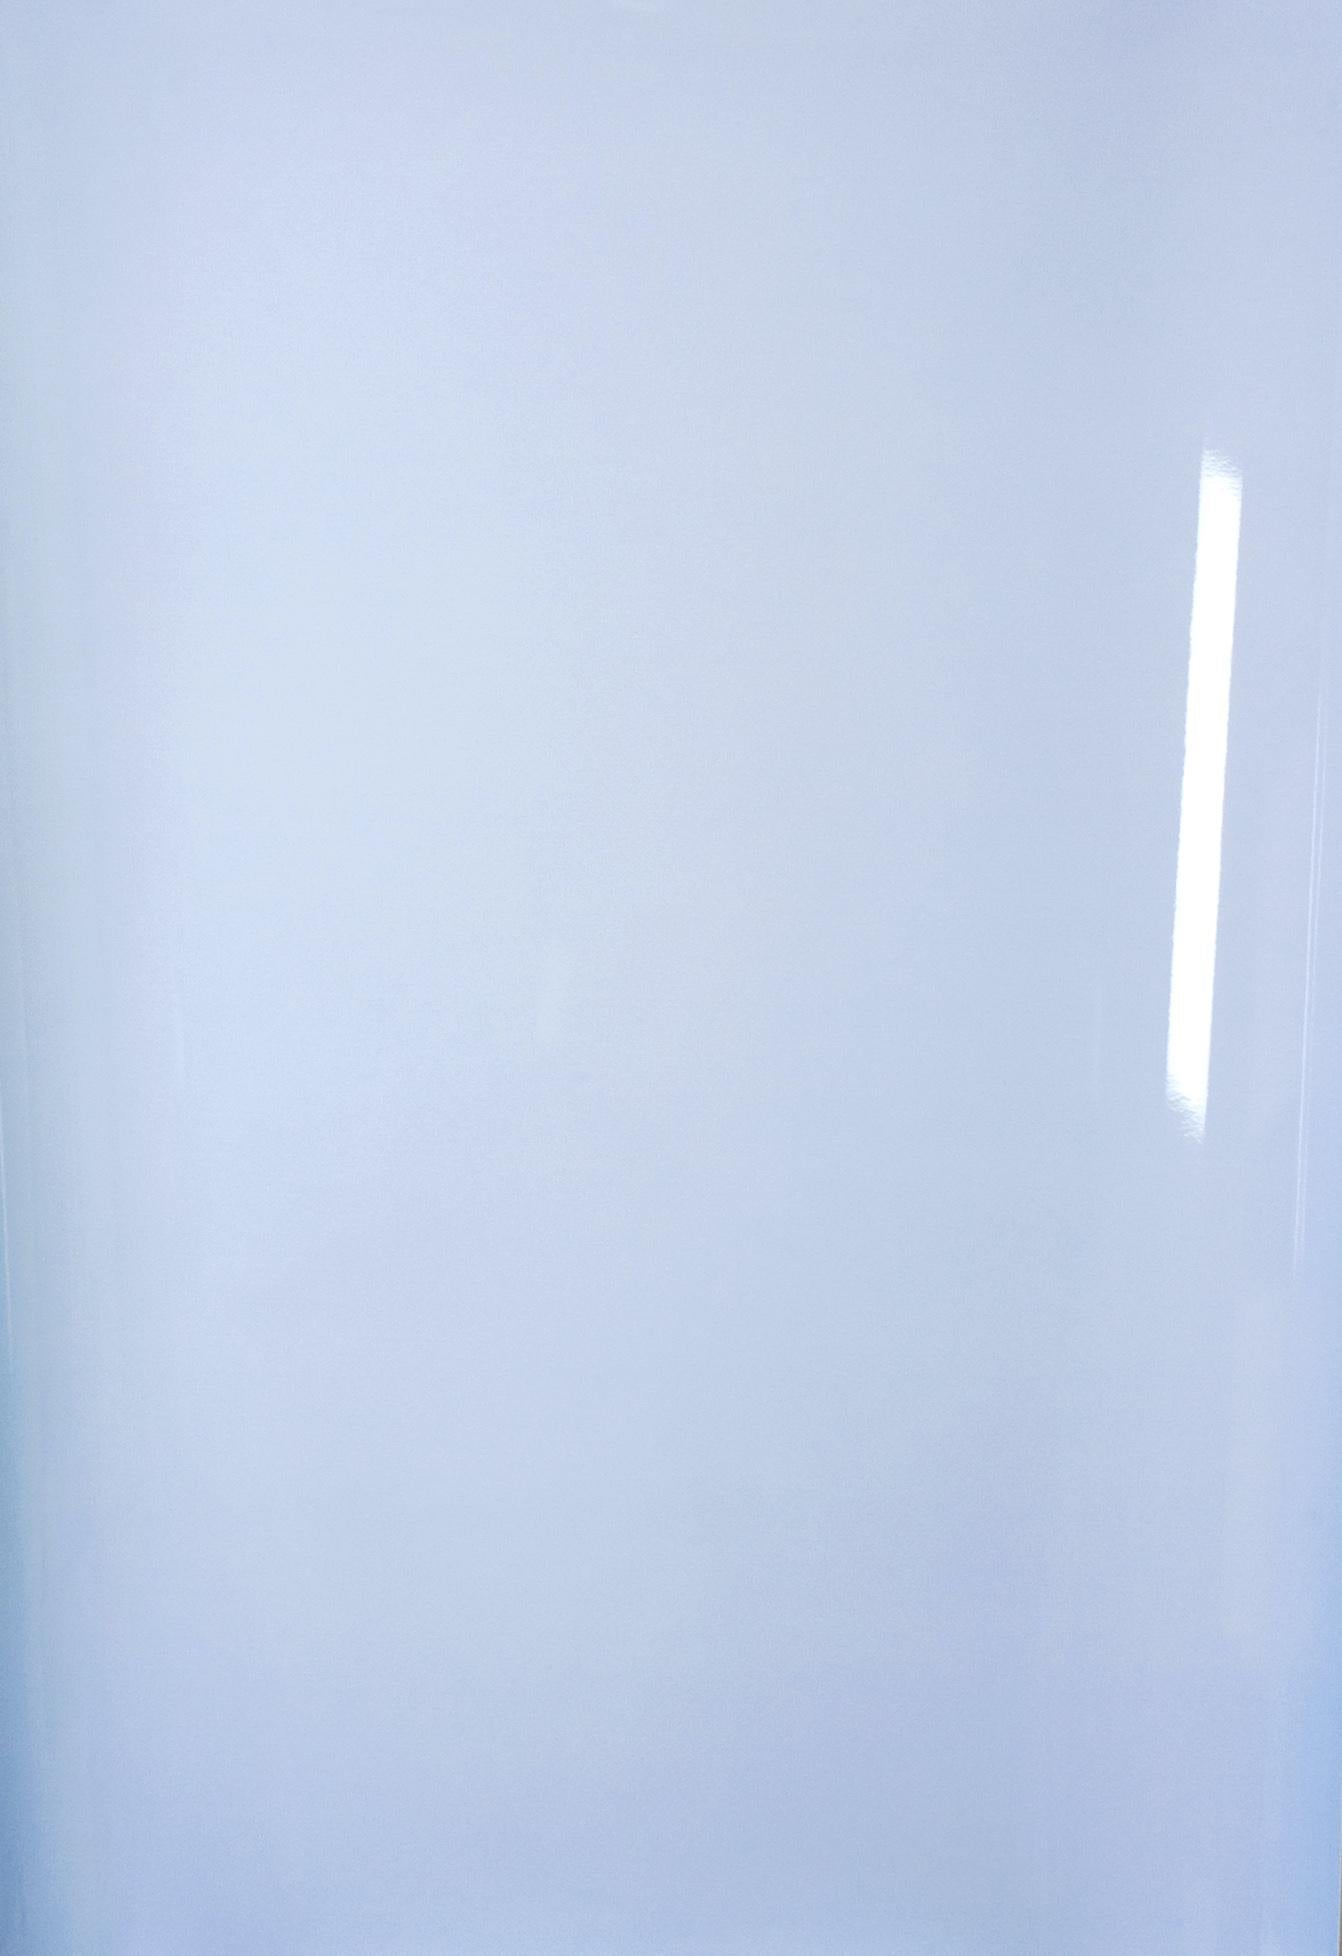 Ulrike Königshofer Color Photograph – Schatten auf Papier, Nr. 1 – Zeitgenössische abstrakte blaue monochrome Fotografie